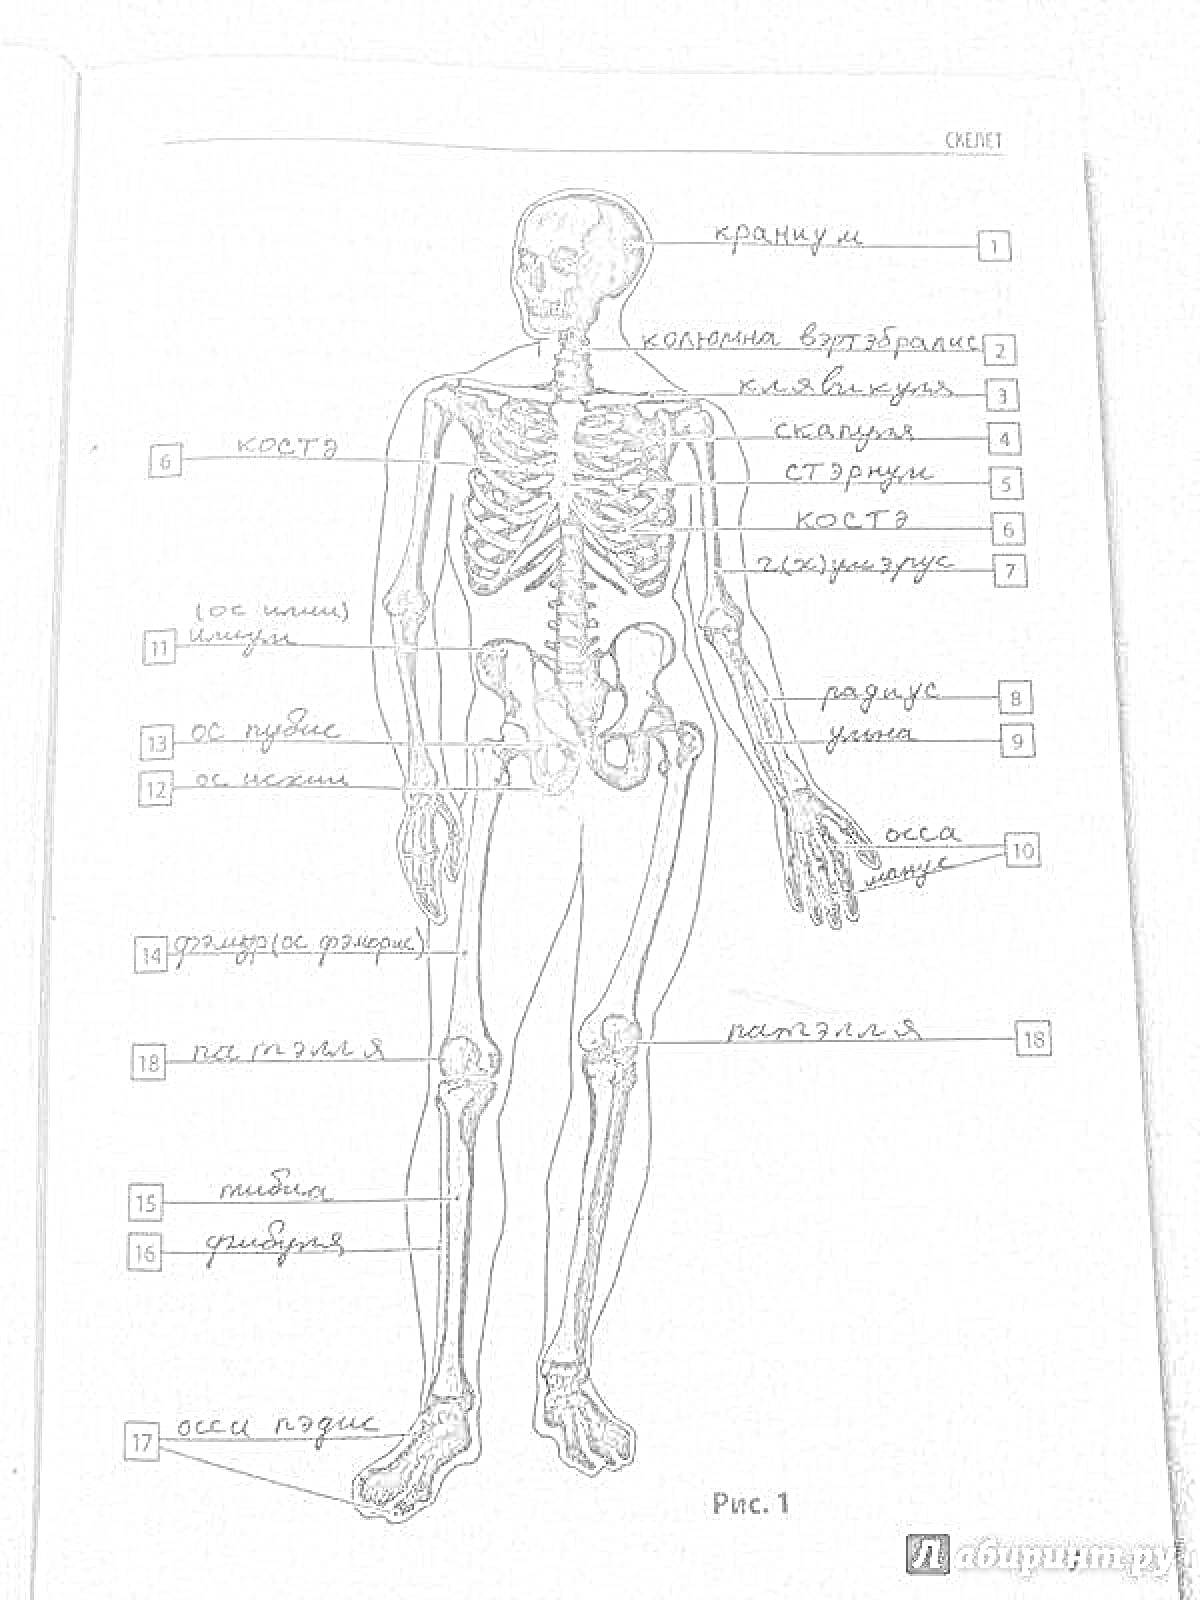 Раскраска Схема скелета человека с анатомическими указателями - черепные кости, ключица, лопатка, грудина, ребра, позвоночник, тазовые кости, кисть руки, бедренная кость, коленная чашечка, голень, стопа.